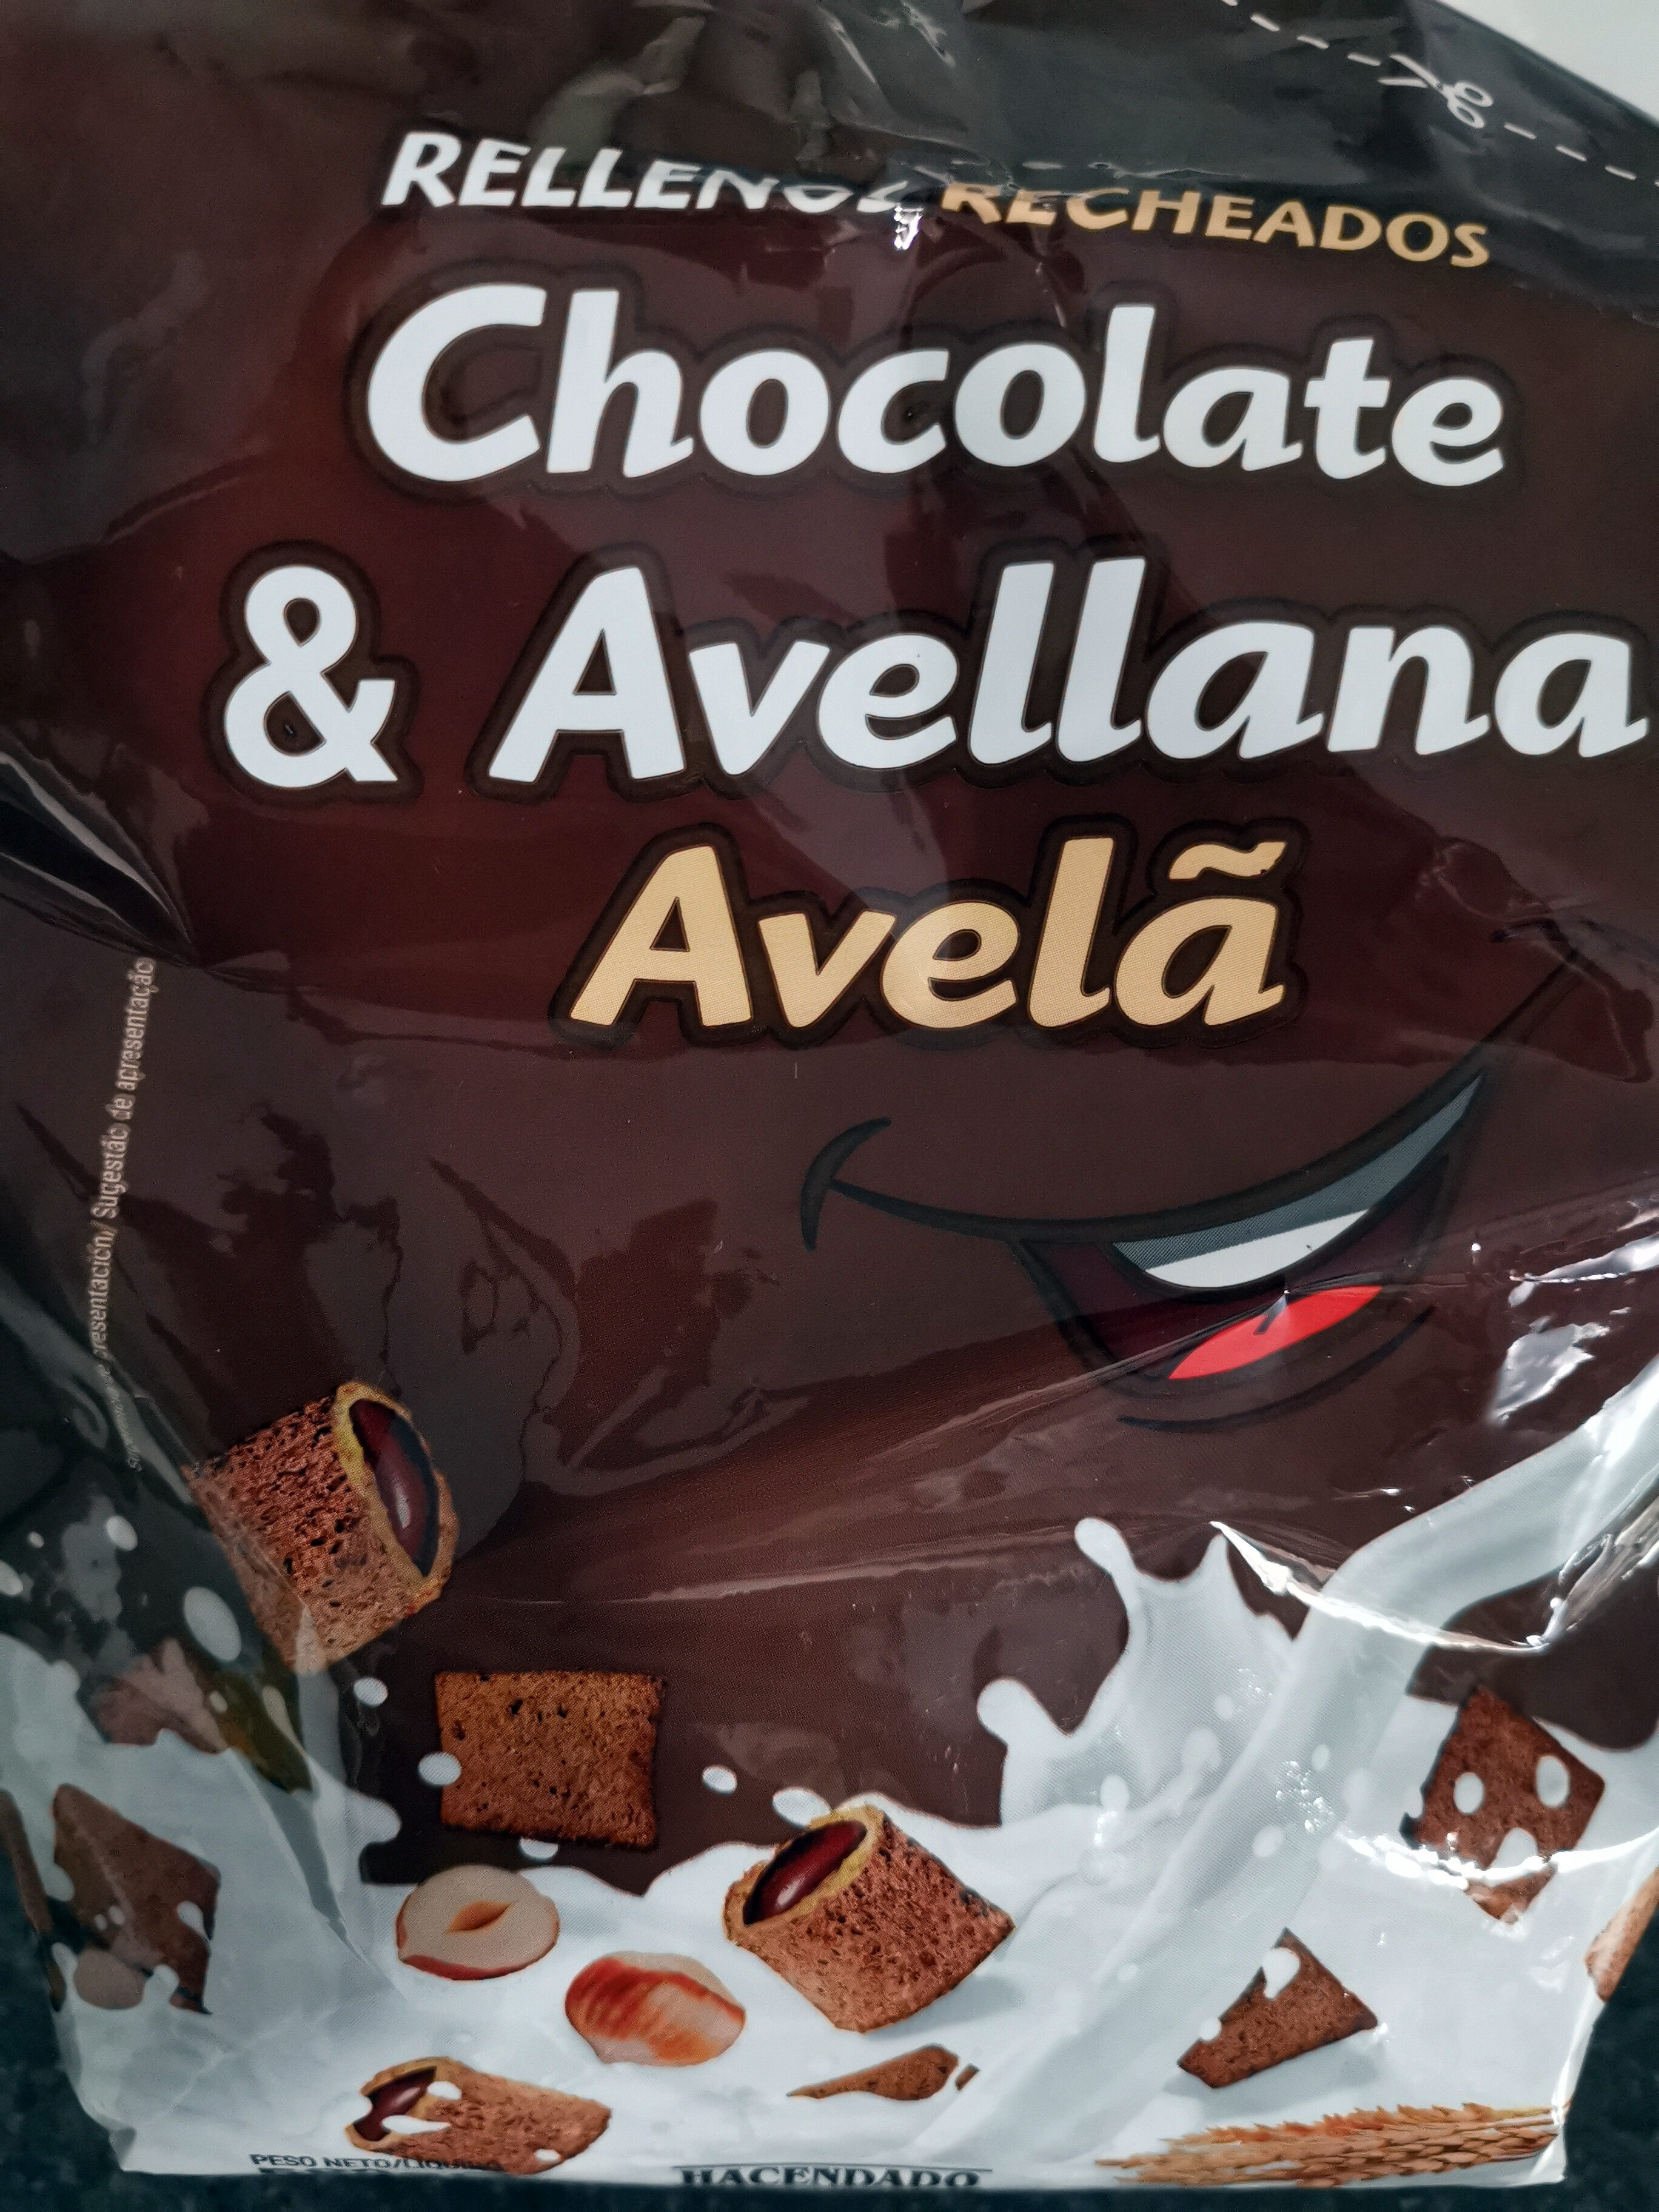 Cereales de chocolate y avellana - Producte - es